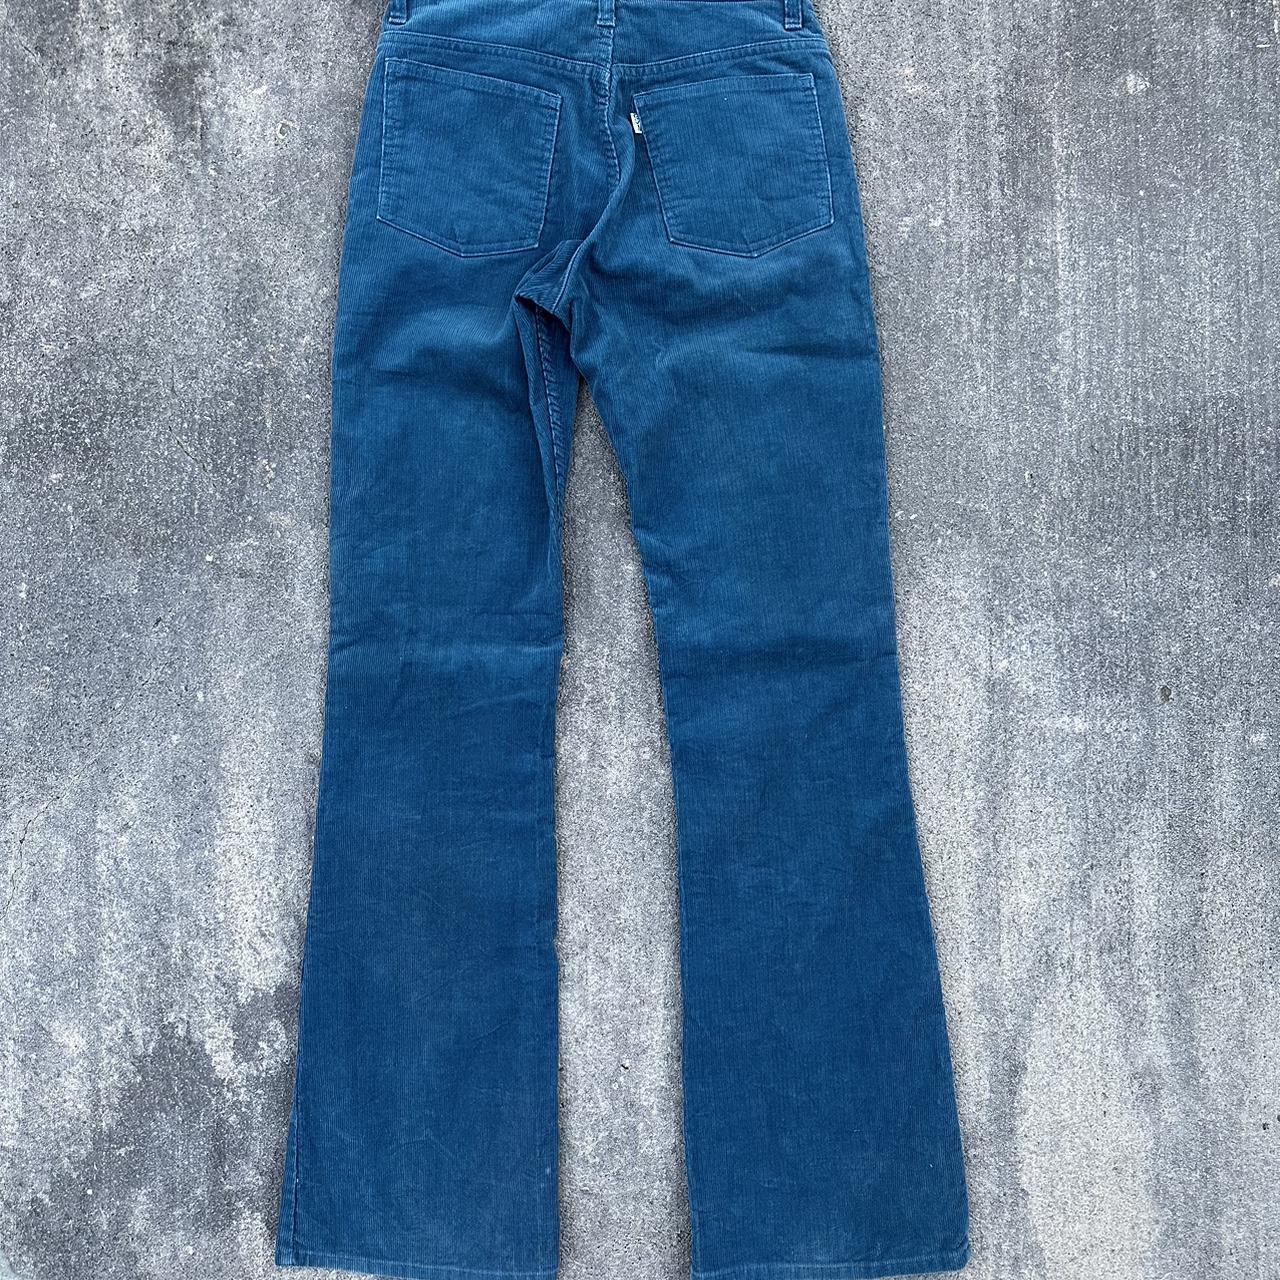 Vintage 70s Levi’s Corduroy Flare Pants fits &... - Depop